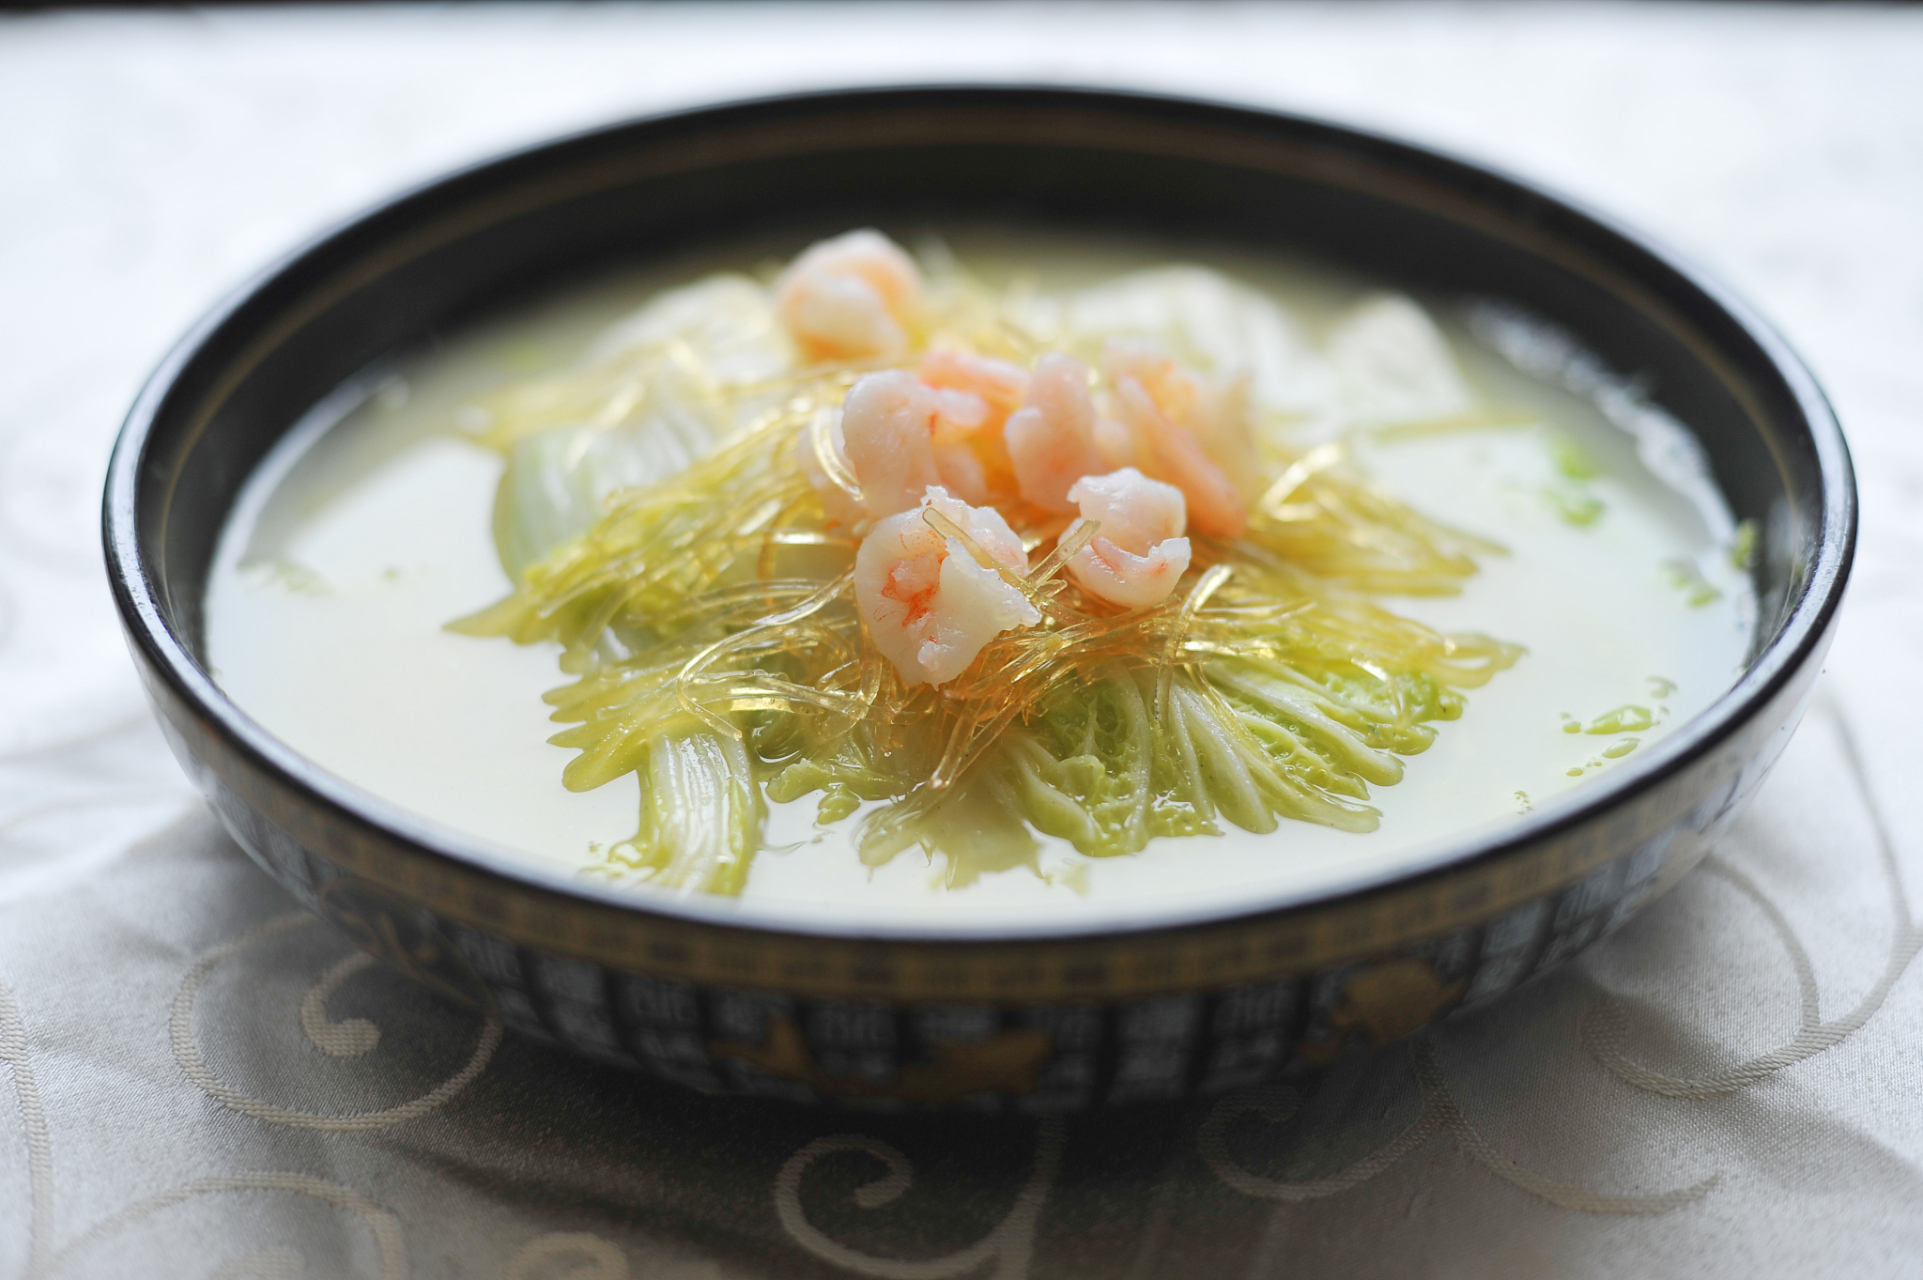 洛阳牡丹燕菜是一道历史悠久的传统名菜,以其独特的配方,精湛的工艺和